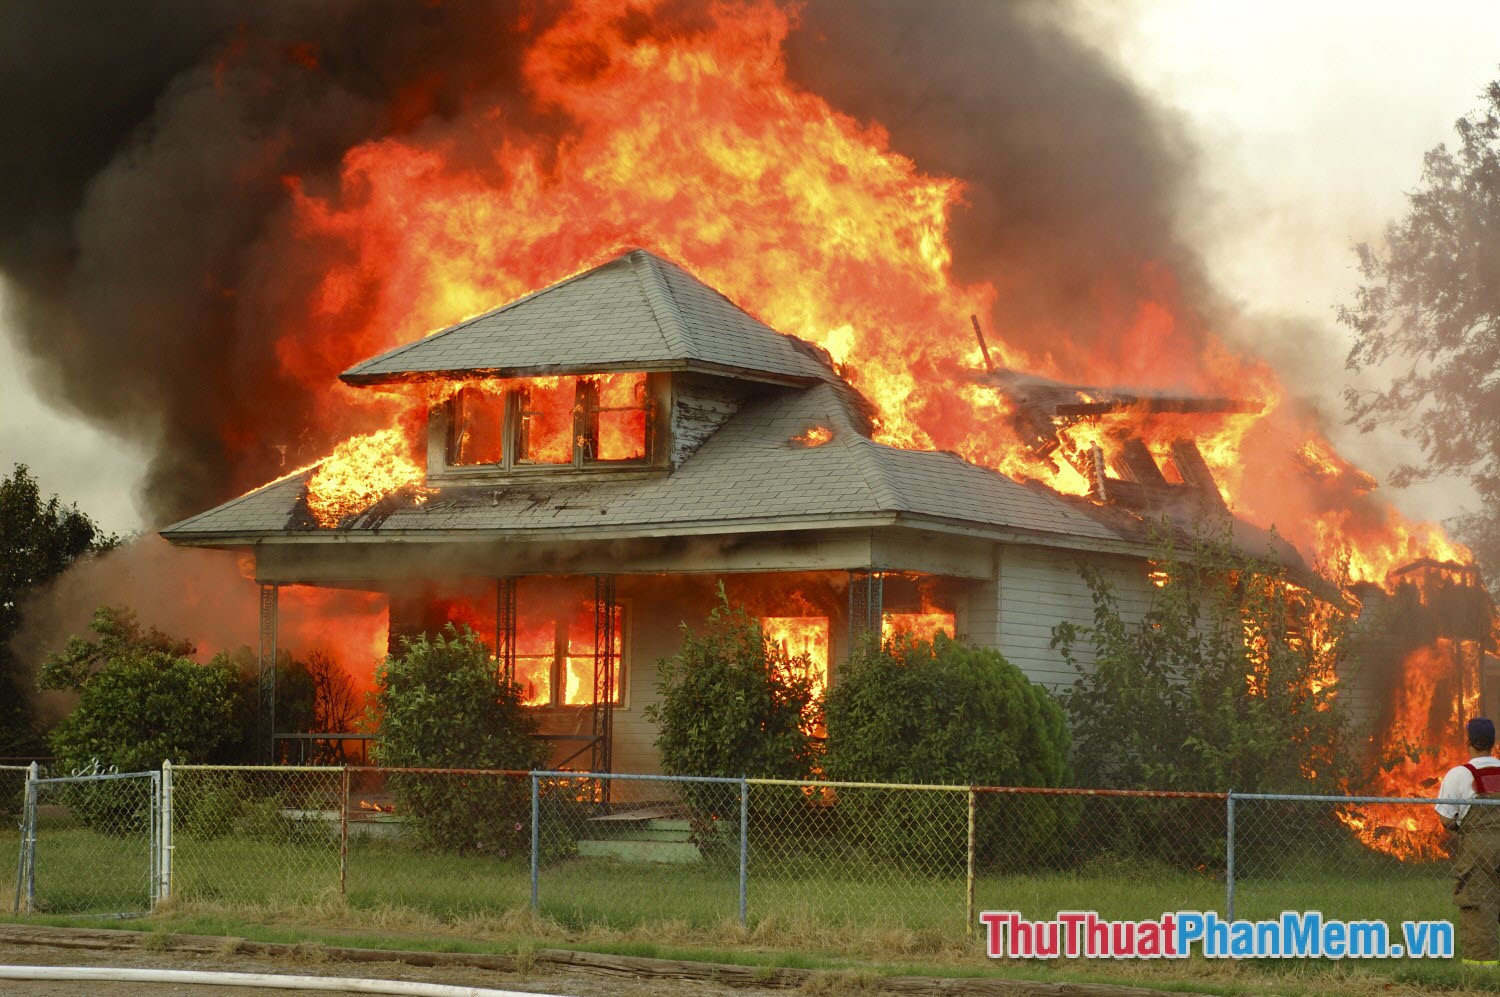 Nằm mơ thấy nhà mình cháy lớn, dù cố gắng nhưng không thể dập tắt được